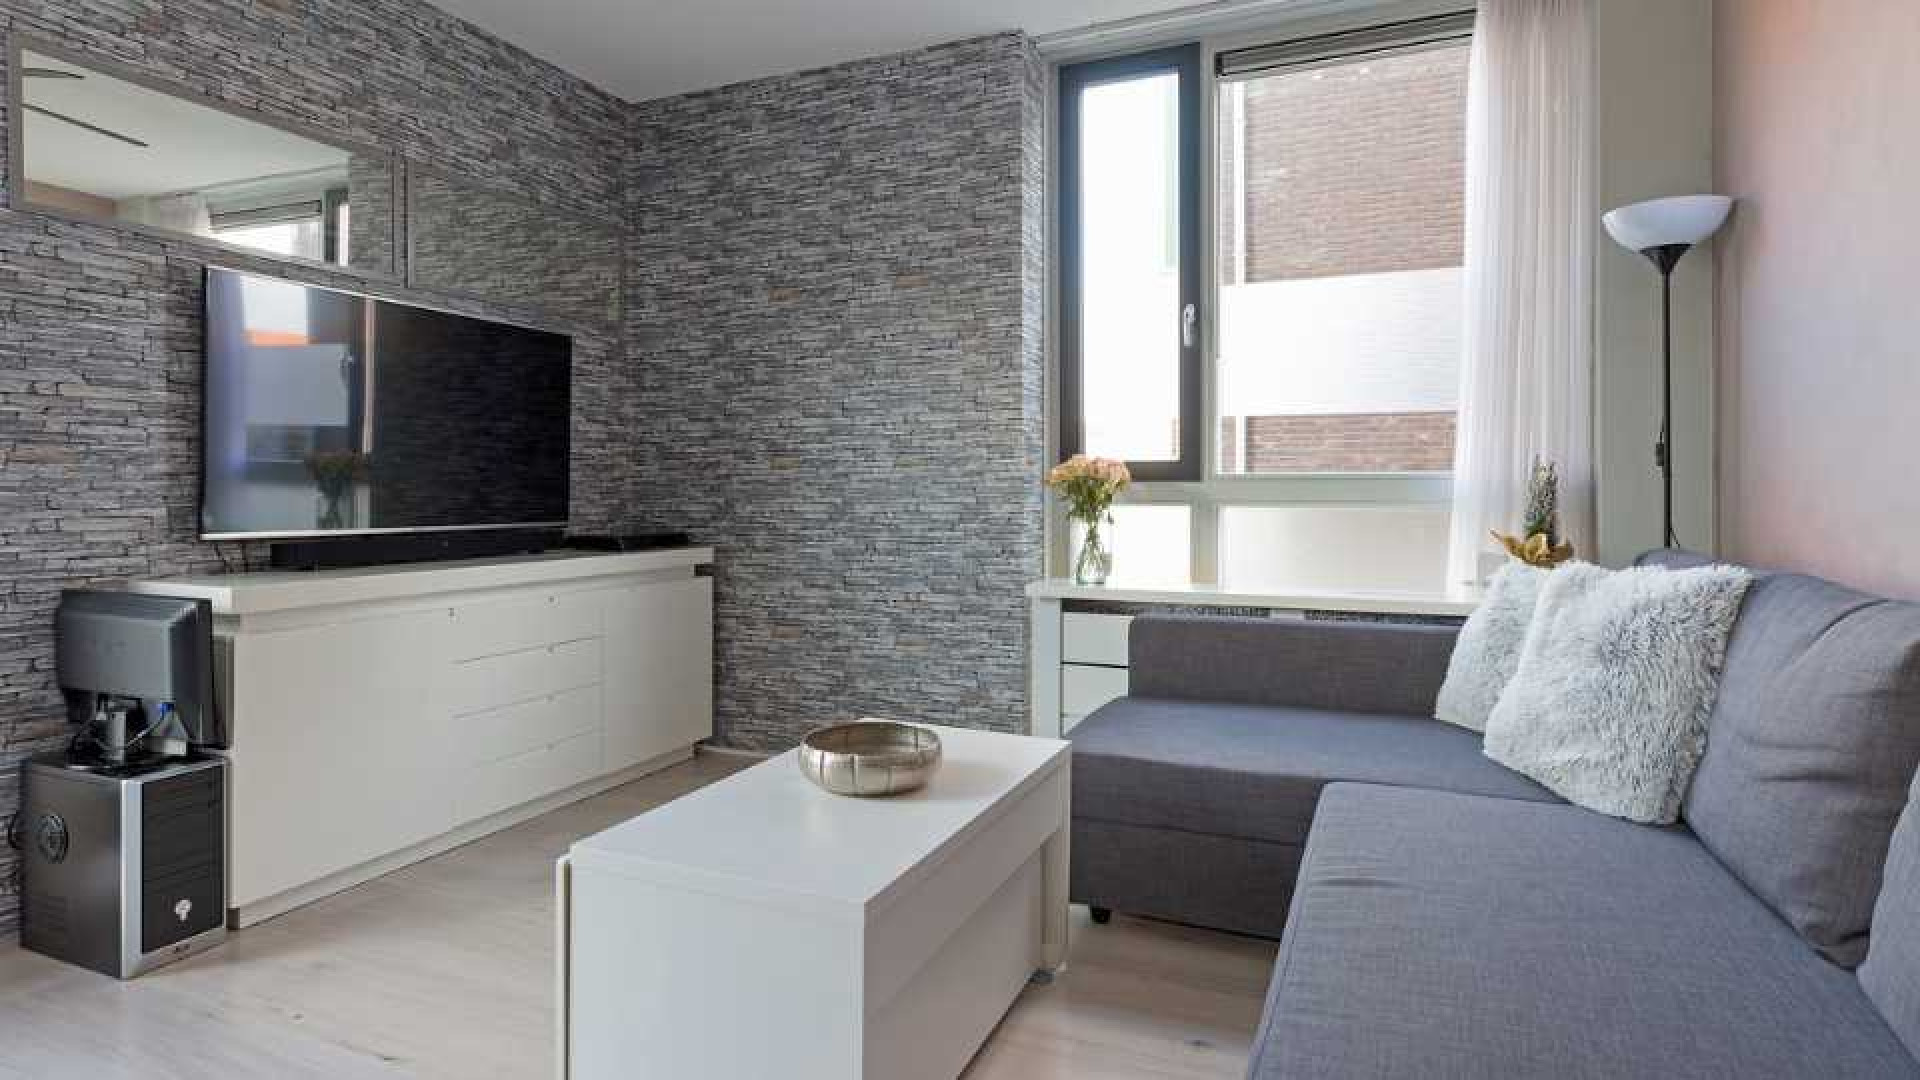 Dave Roelvink koopt eigen appartement in Landsmeer. Zie foto's 5